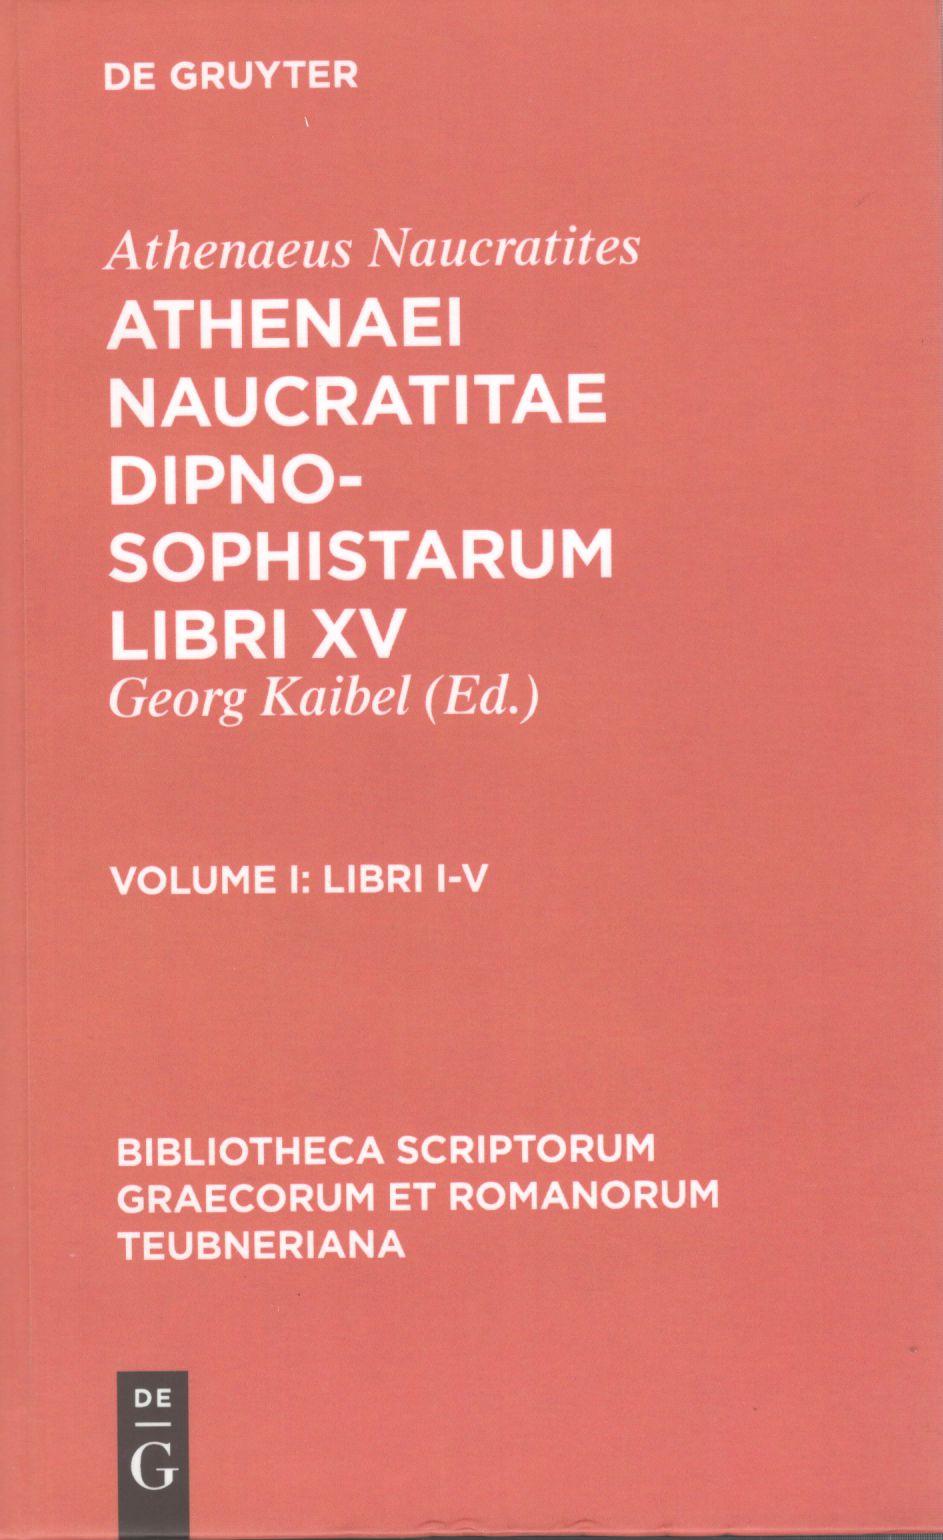 ATHENAEI NAUCRATITAE DIPNOSOPHISTARUM LIBRI XV - VOLUME I: LIBRI I-V